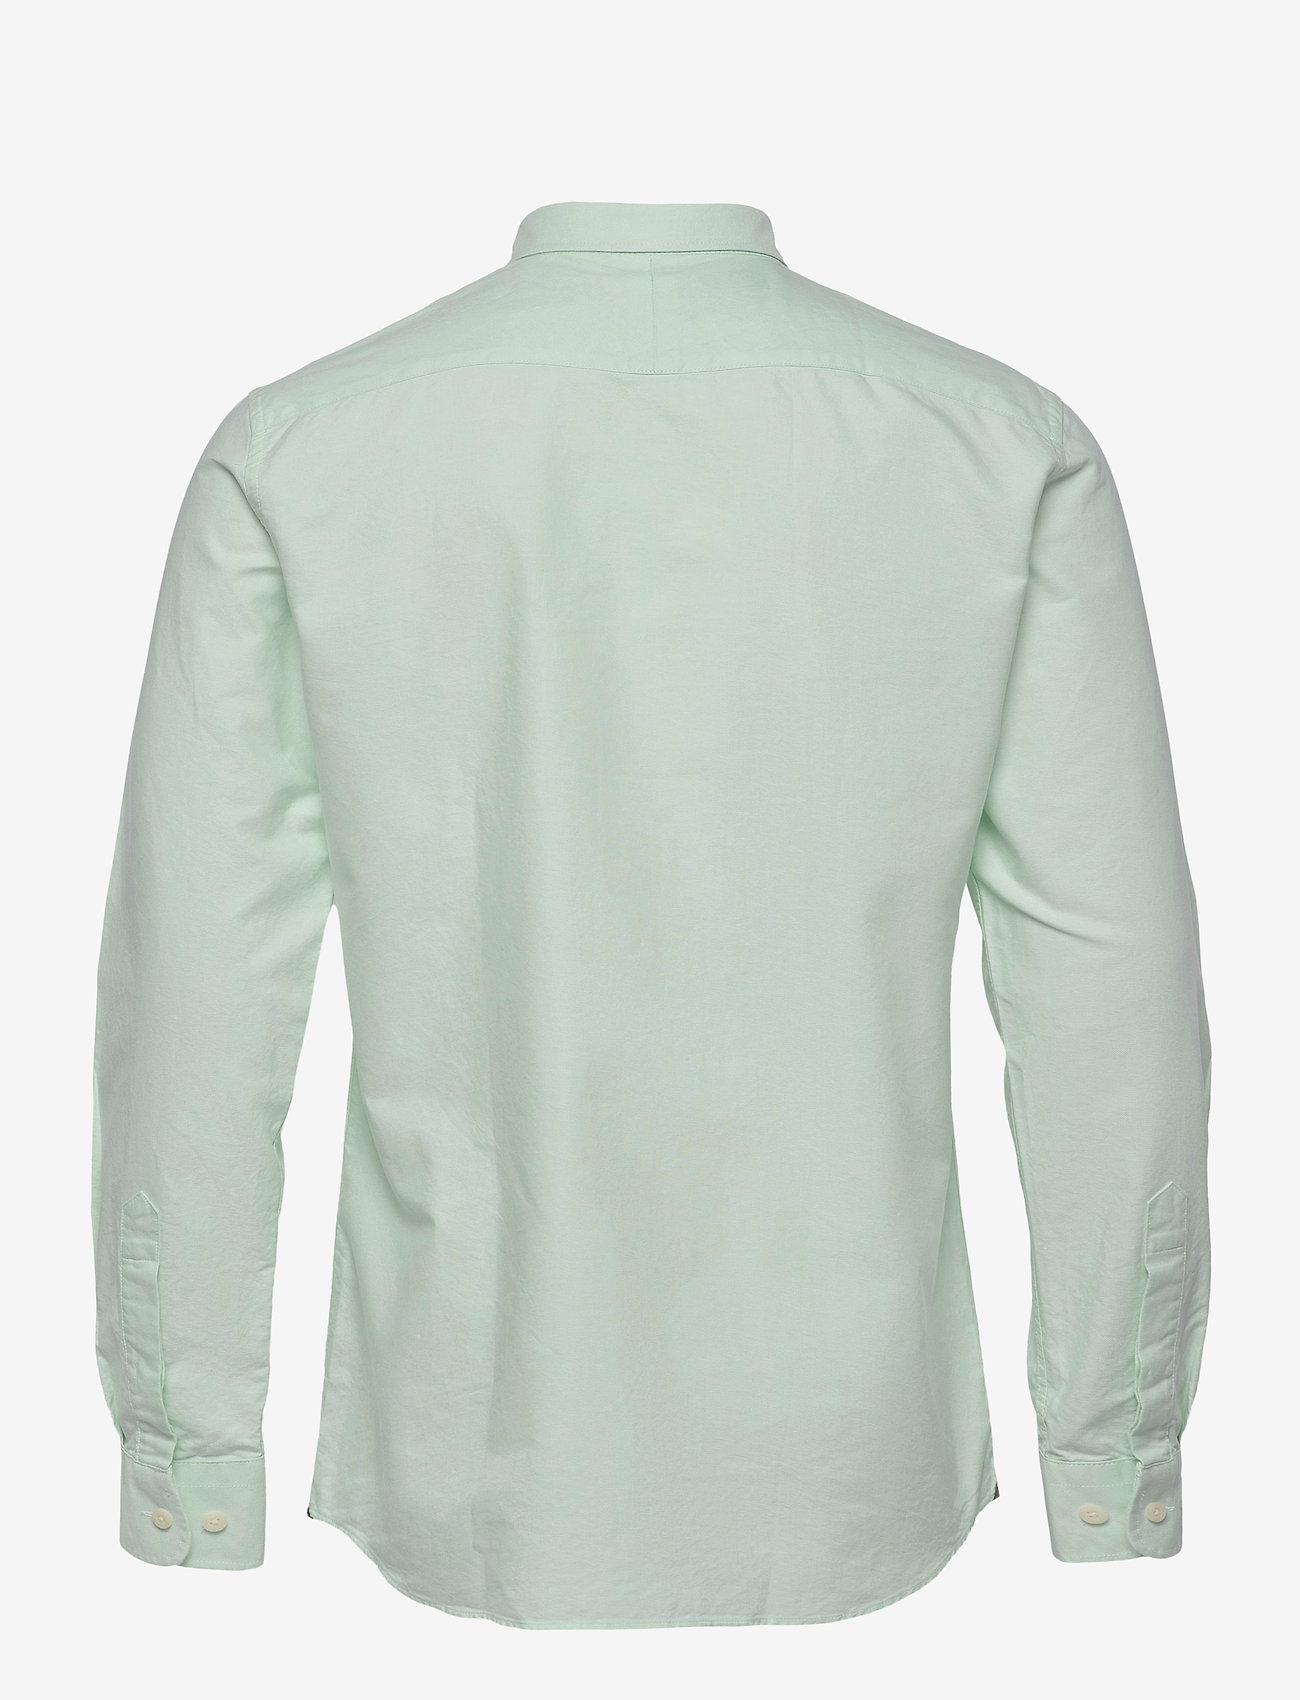 Morris - Douglas Shirt-Slim Fit - basic-hemden - turquoise - 1